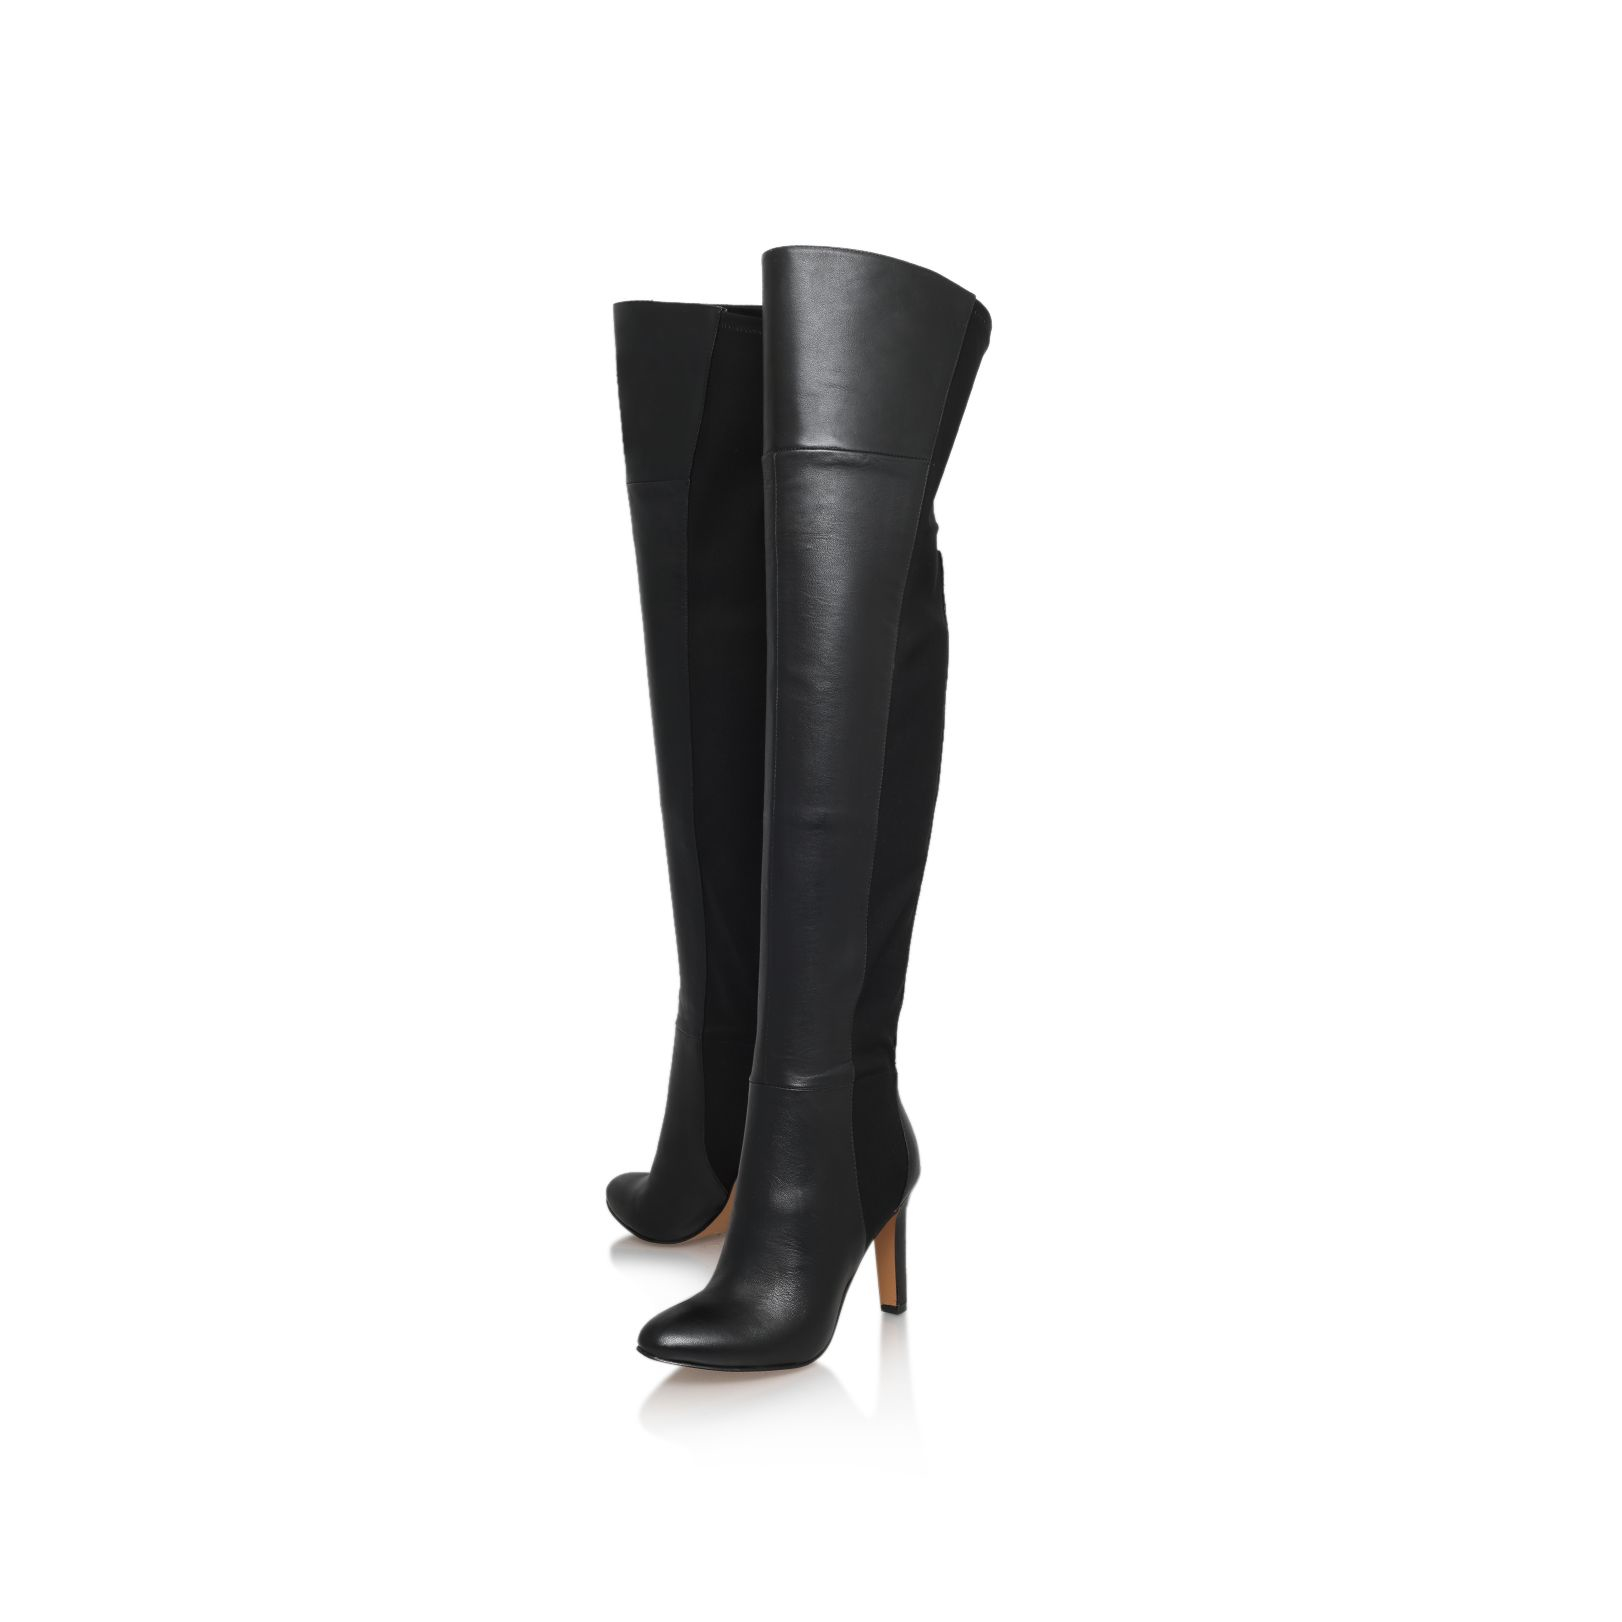 Nine west Caldren High Heel Over The Knee Boots in Black | Lyst